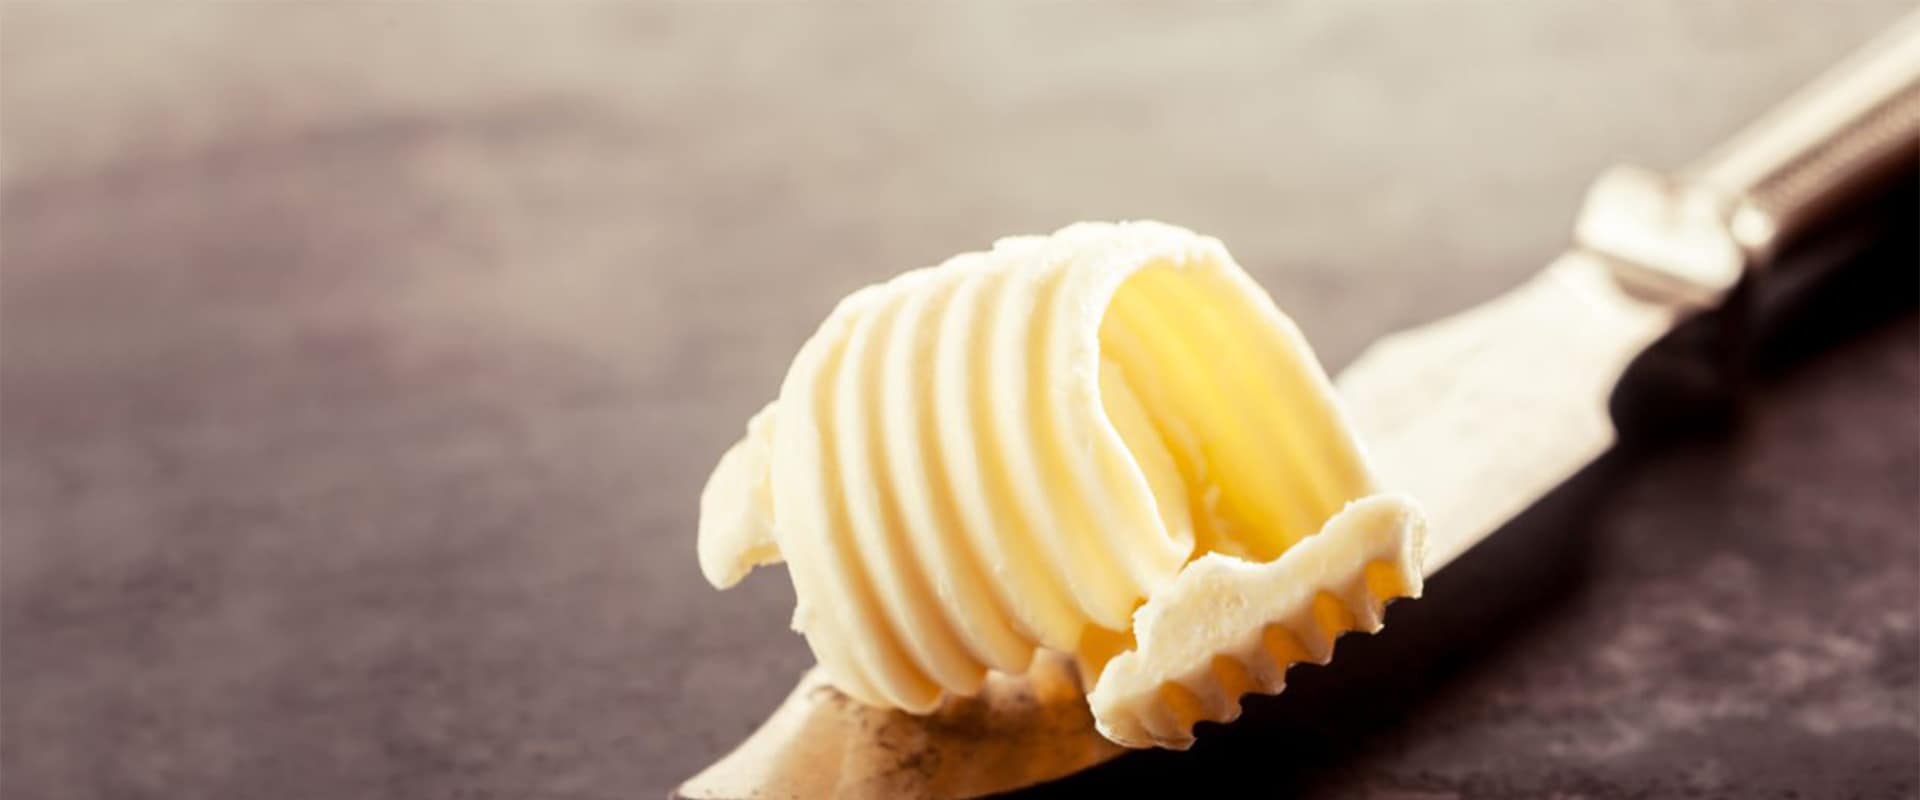 butter-margarine-latteria-sociale-stallone